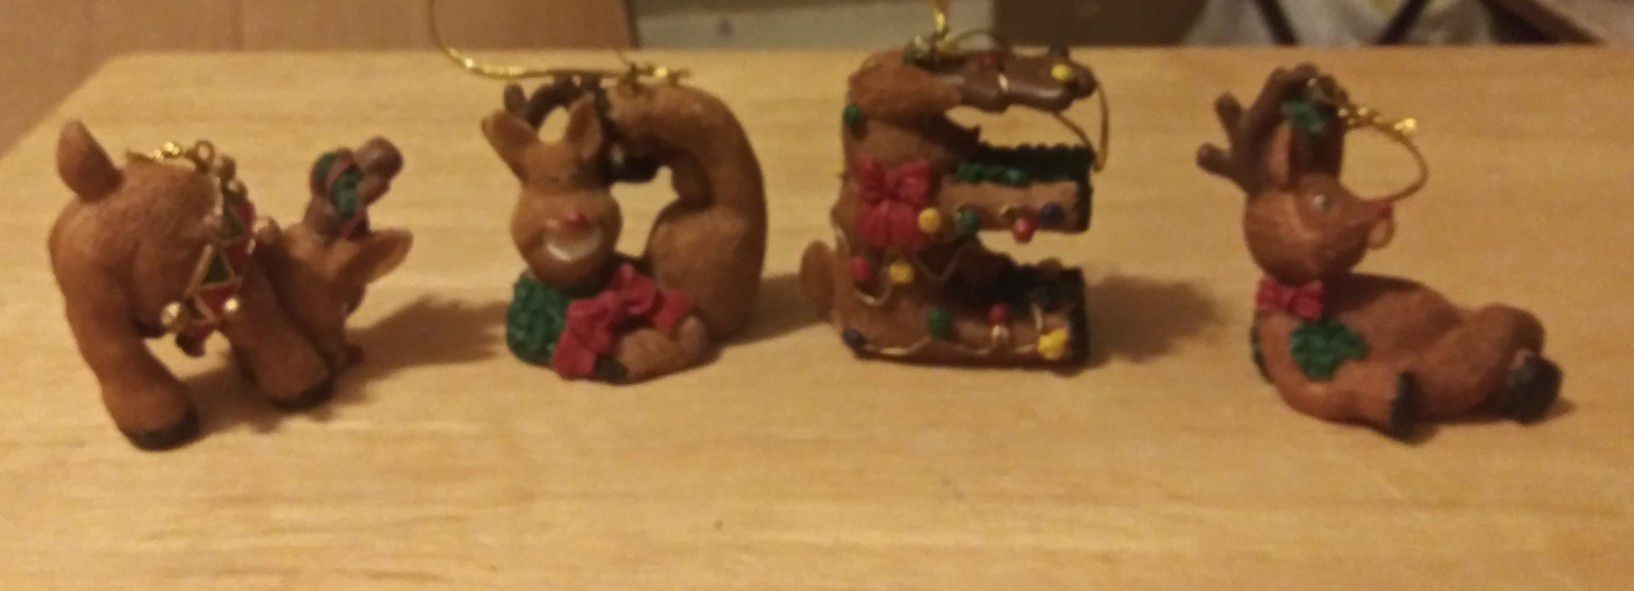 Reindeer ornaments